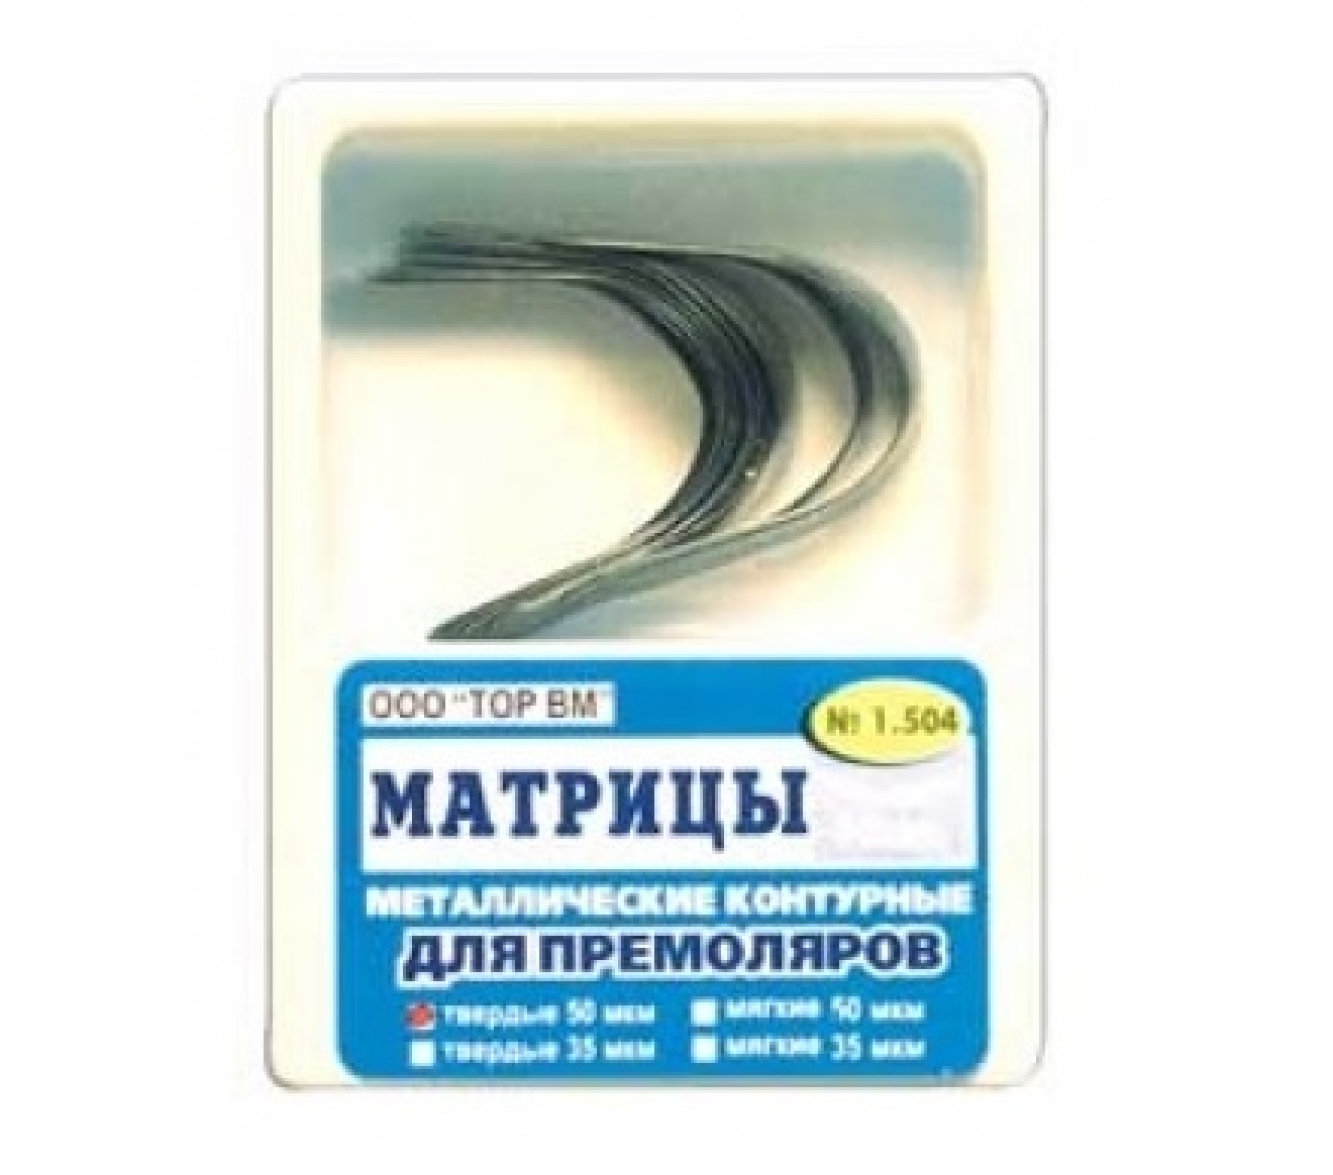 Матрицы стоматологические металлические контурные, для премоляров формы 4, 1.504, ТОР ВМ (Россия)